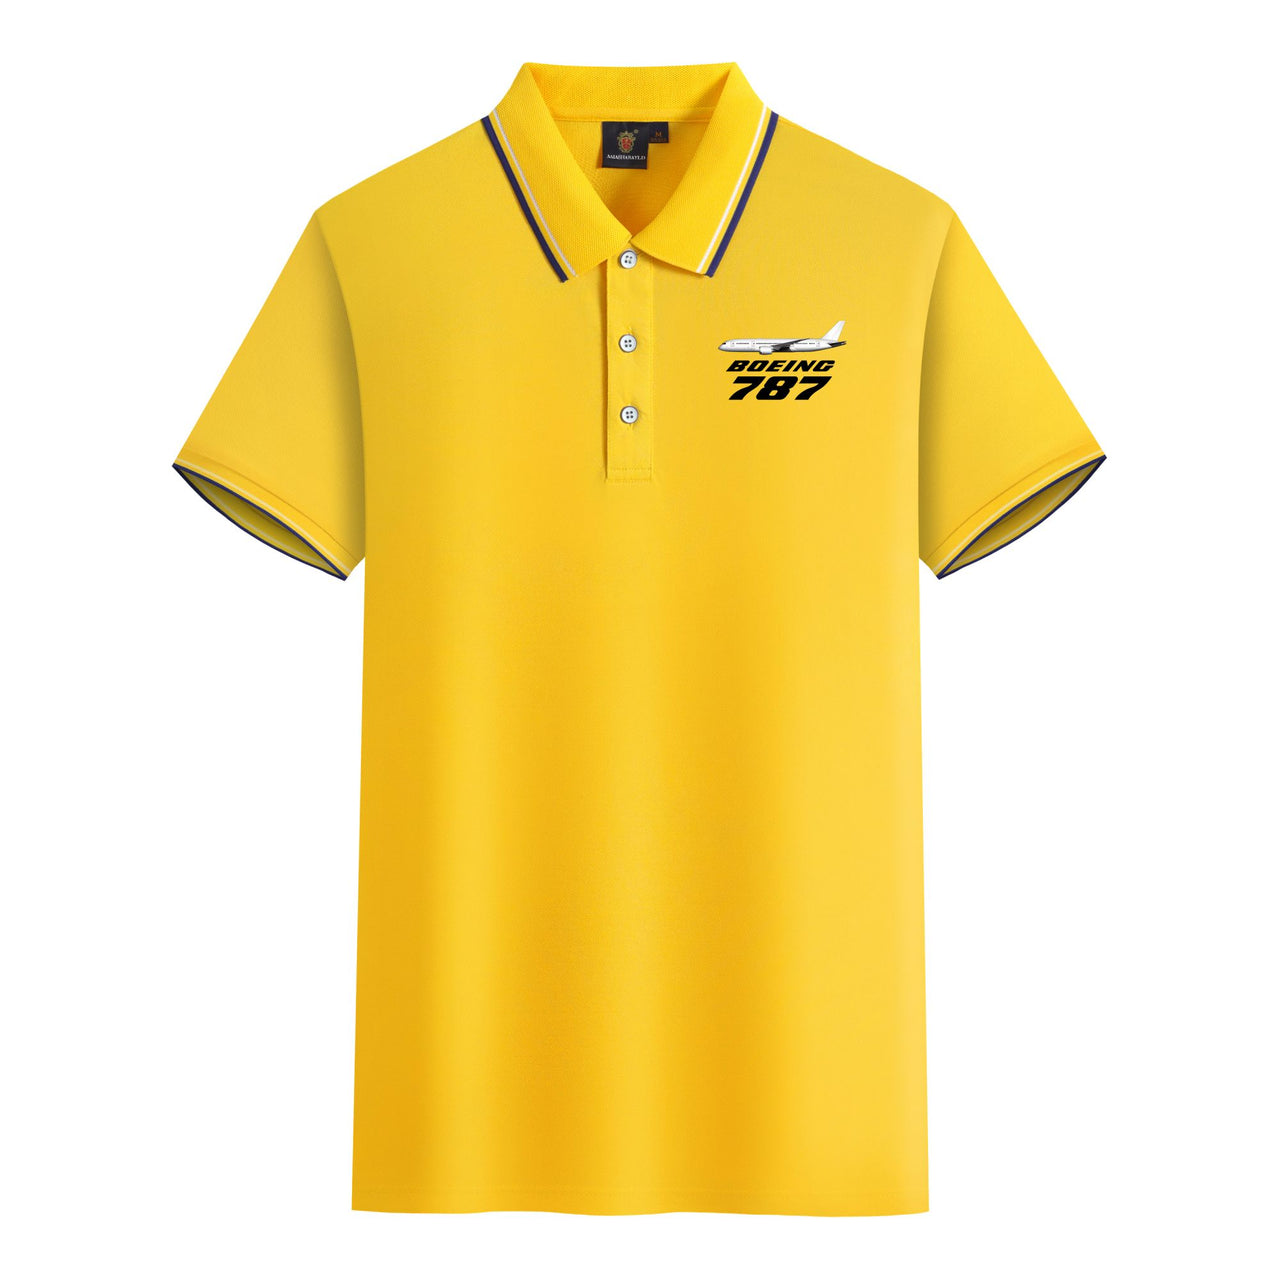 The Boeing 787 Designed Stylish Polo T-Shirts